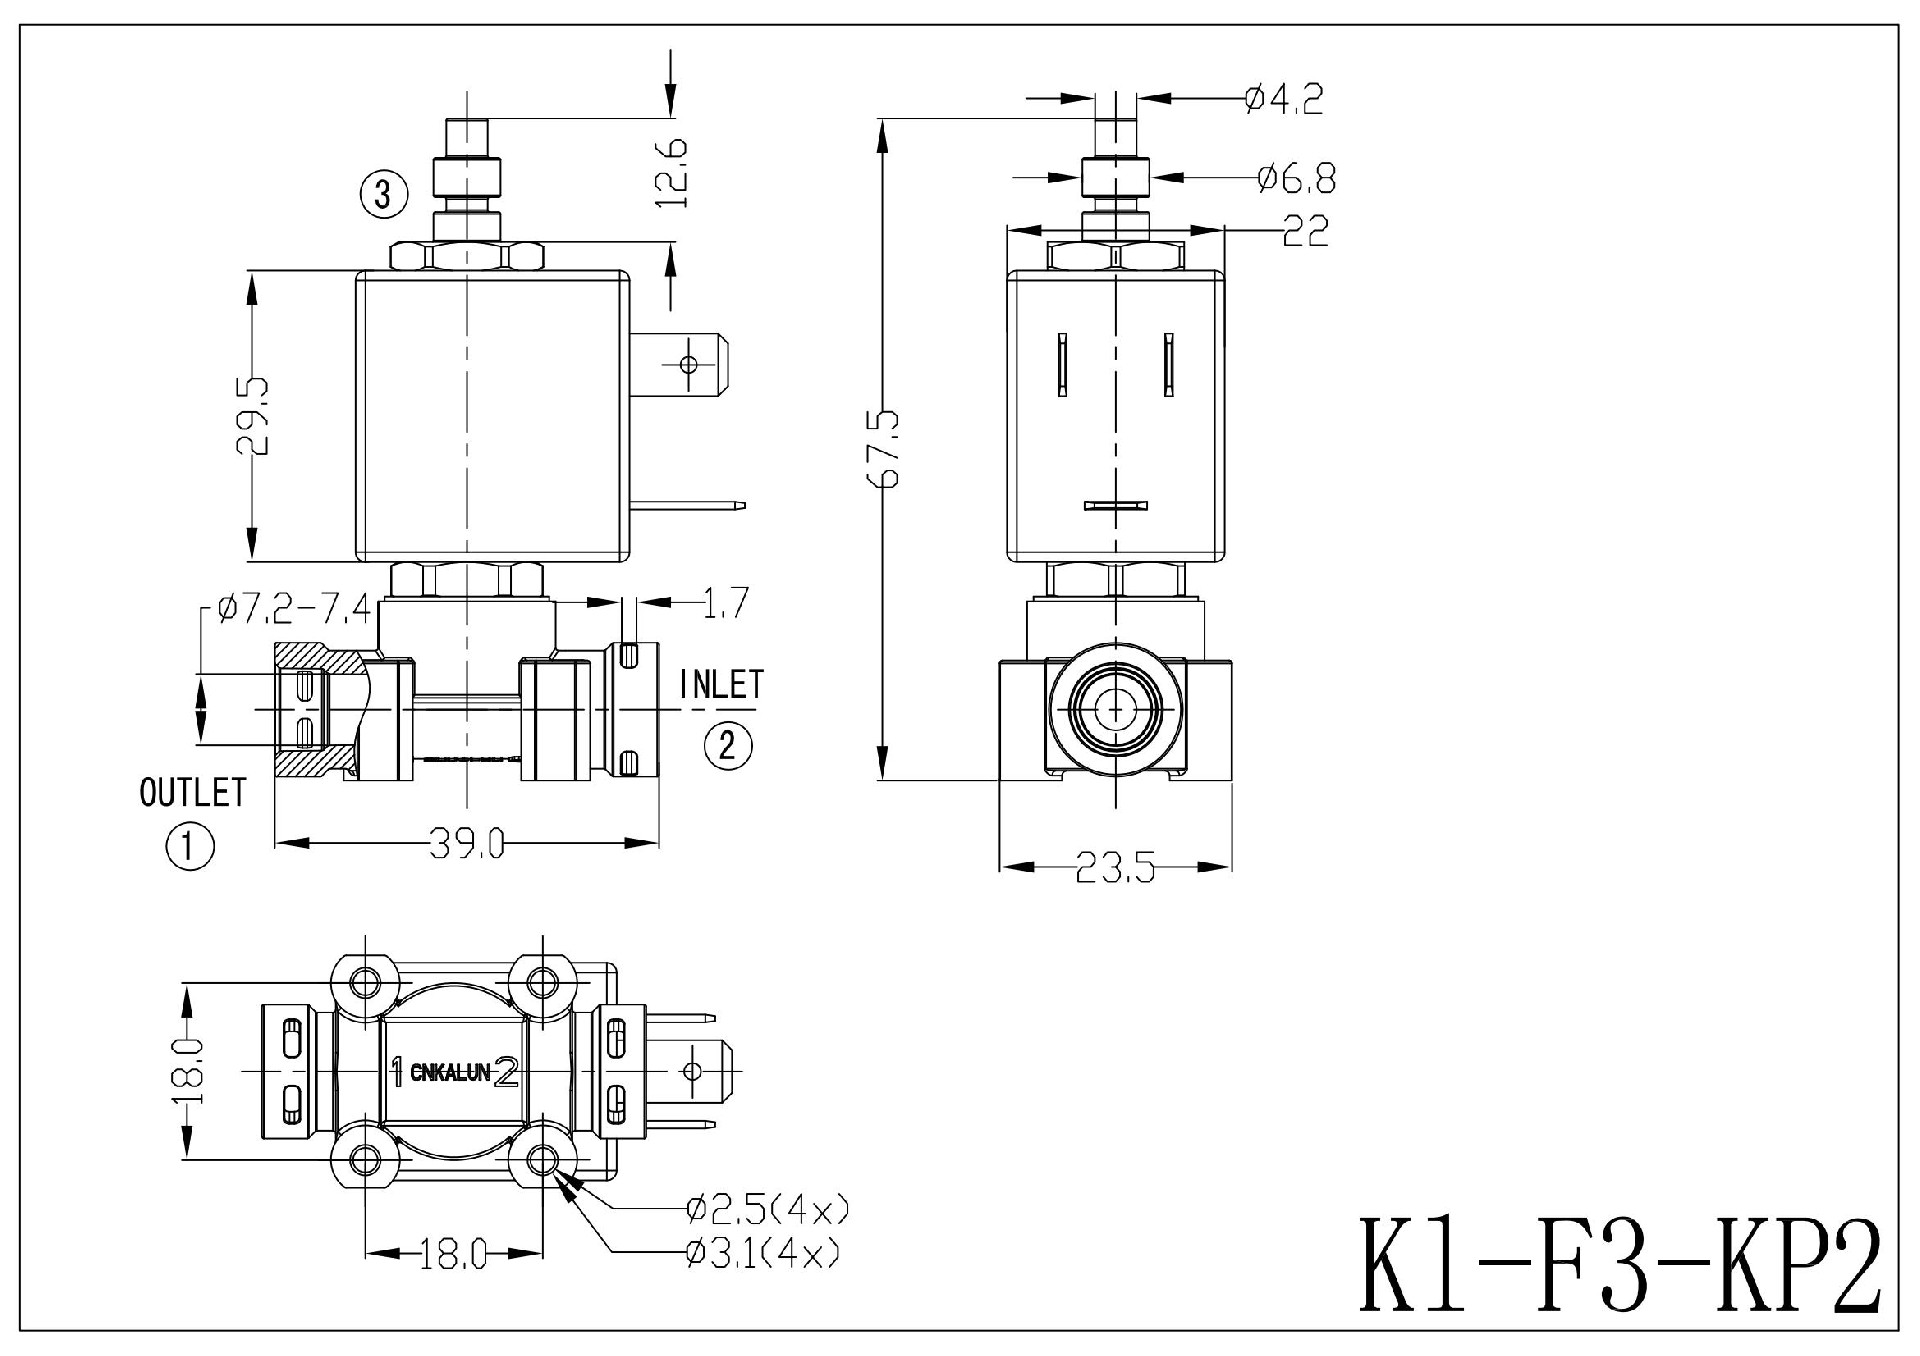 Kl-F3-KP2_00.jpg